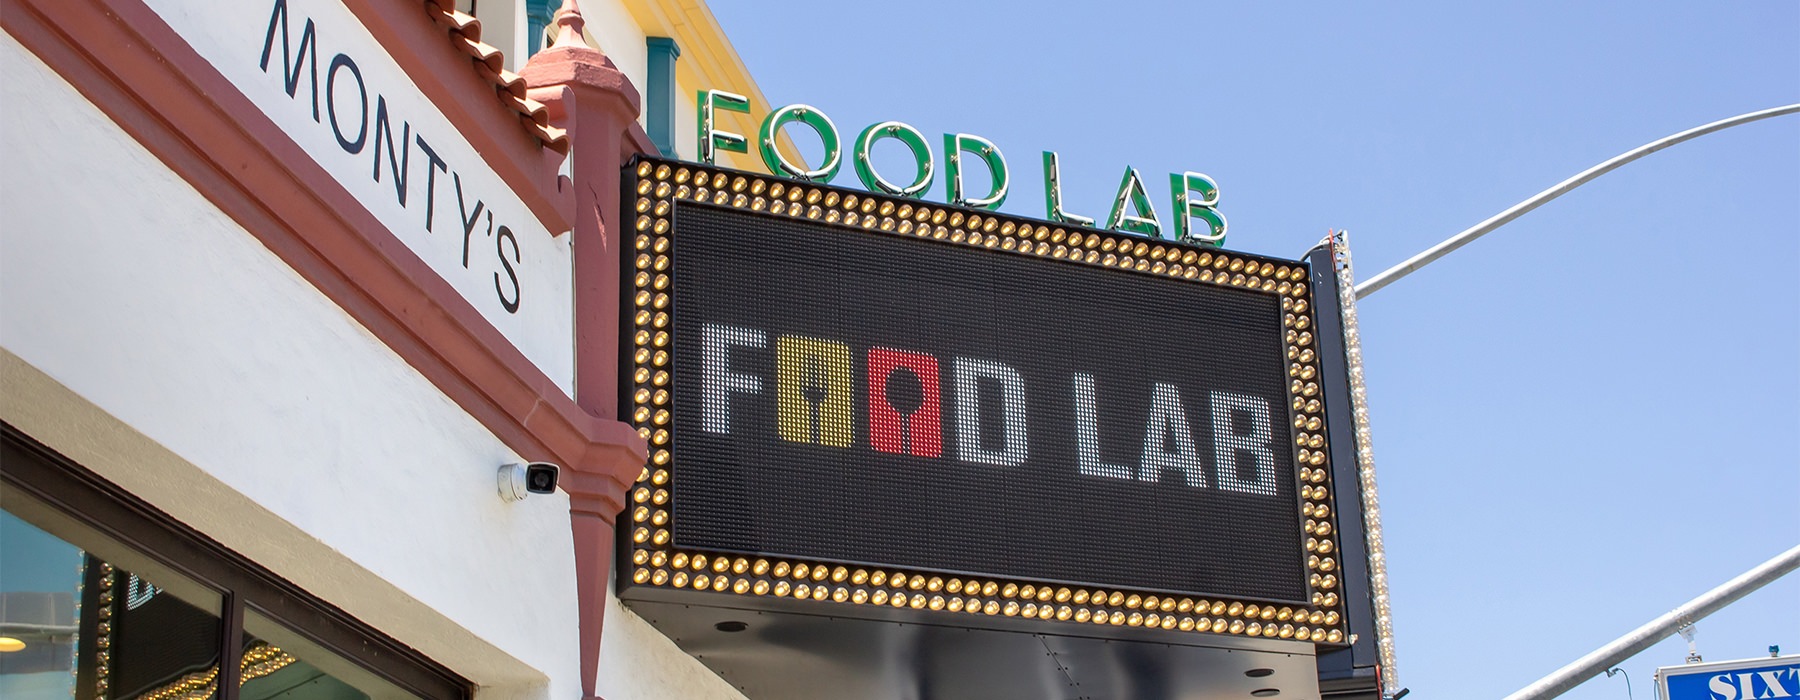 sign of Riverside Food Lab